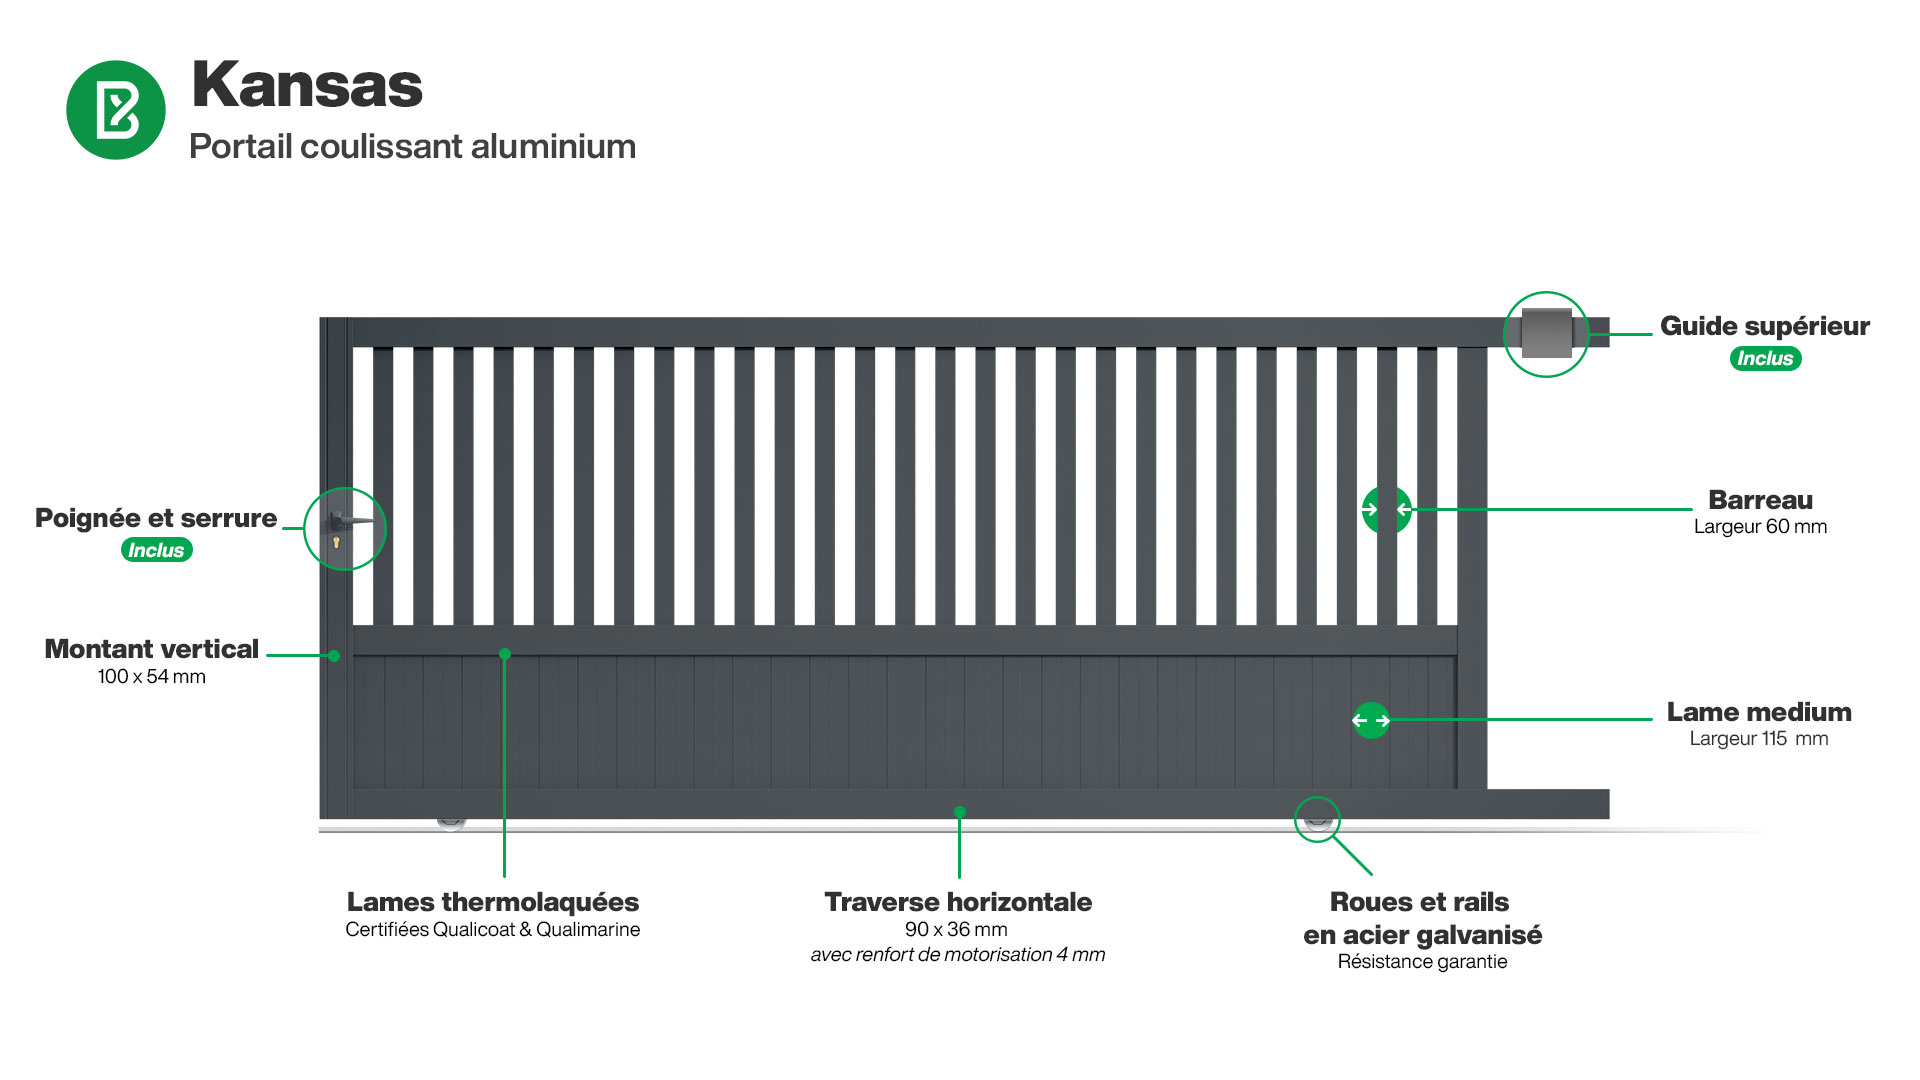 Portail : Infographie d'un portail coulissant aluminium modèle KANSAS